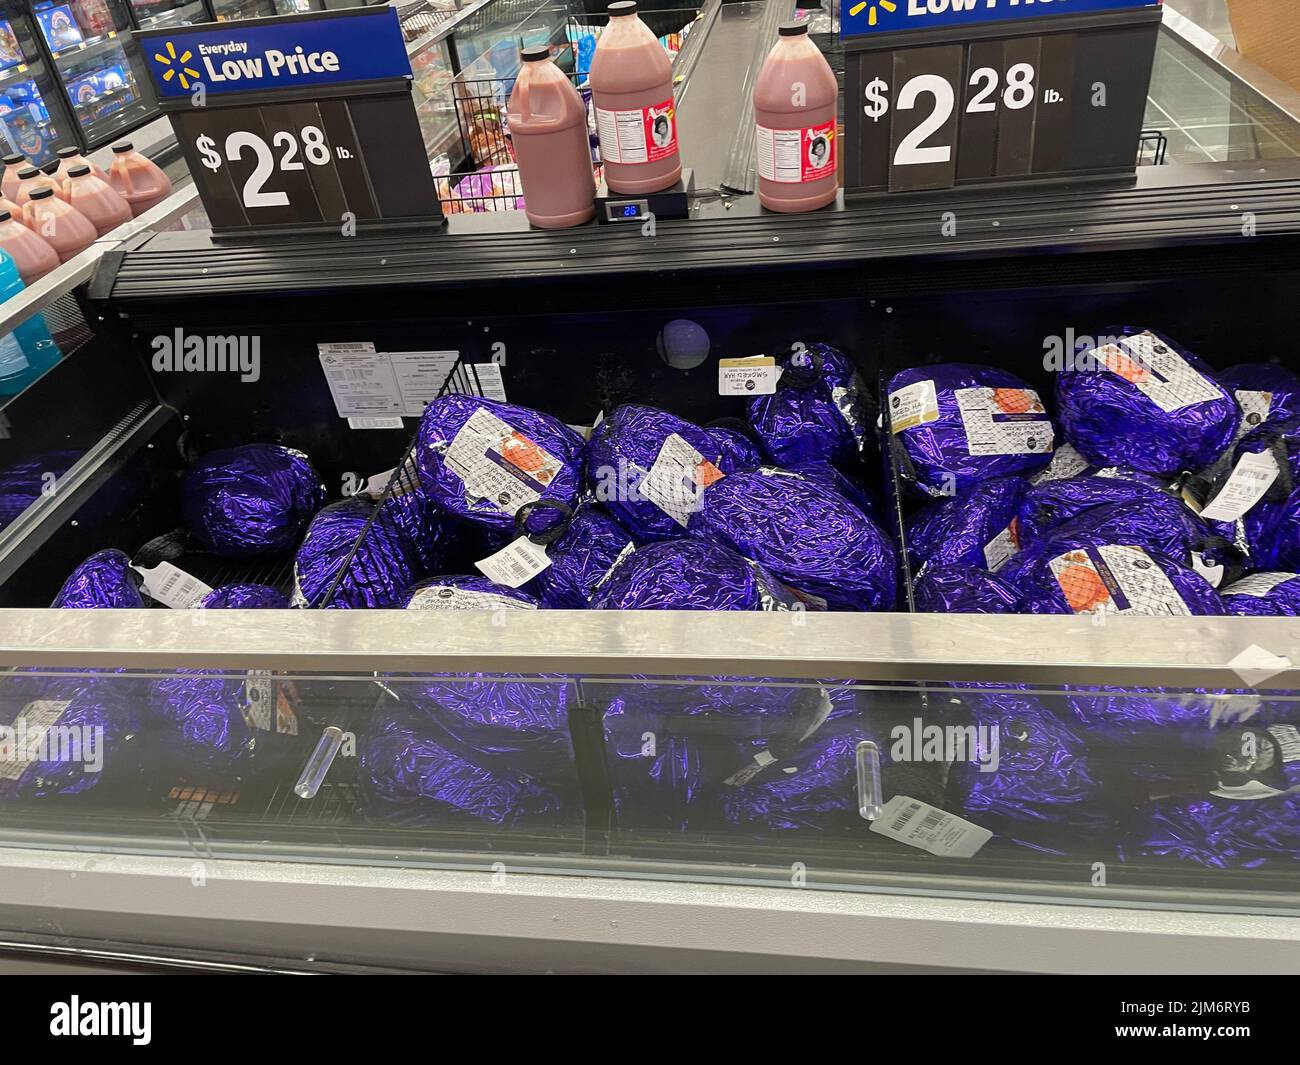 Augusta, GA USA - 11 28 21: Walmart Lebensmittelgeschäft Inneneinrichtung Urlaub Schinken und Preis Stockfoto